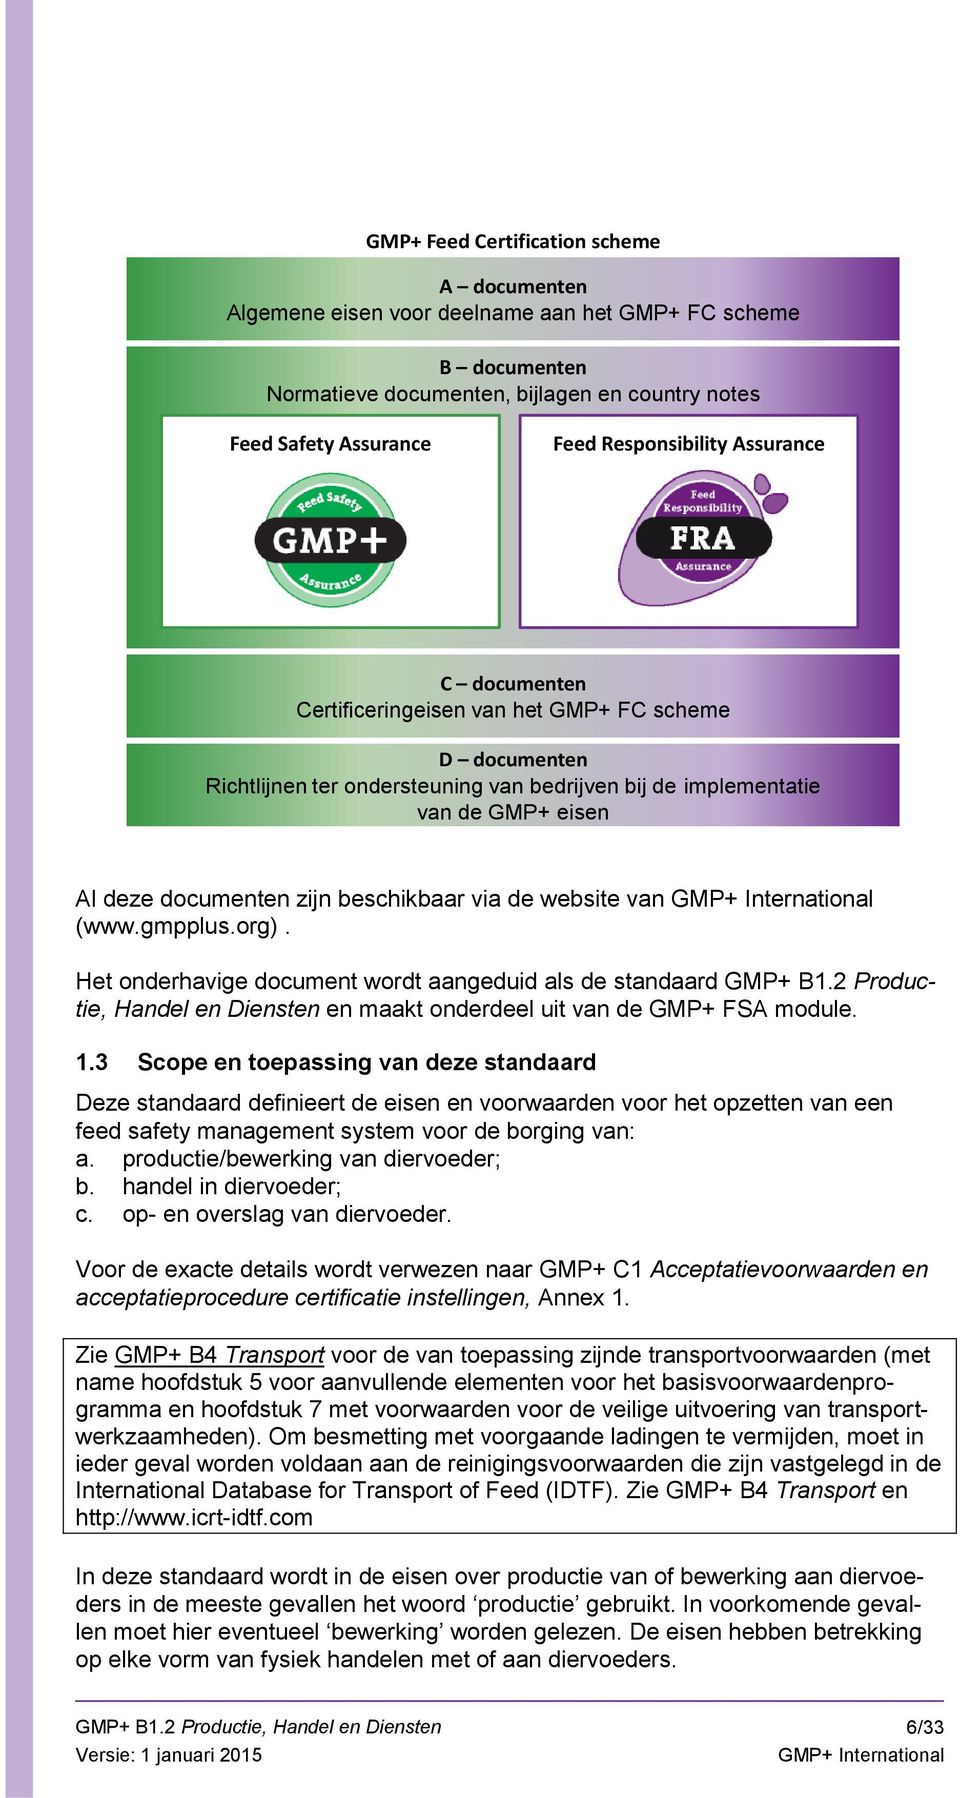 via de website van (www.gmpplus.org). Het onderhavige document wordt aangeduid als de standaard GMP+ B1.2 Productie, Handel en Diensten en maakt onderdeel uit van de GMP+ FSA module. 1.